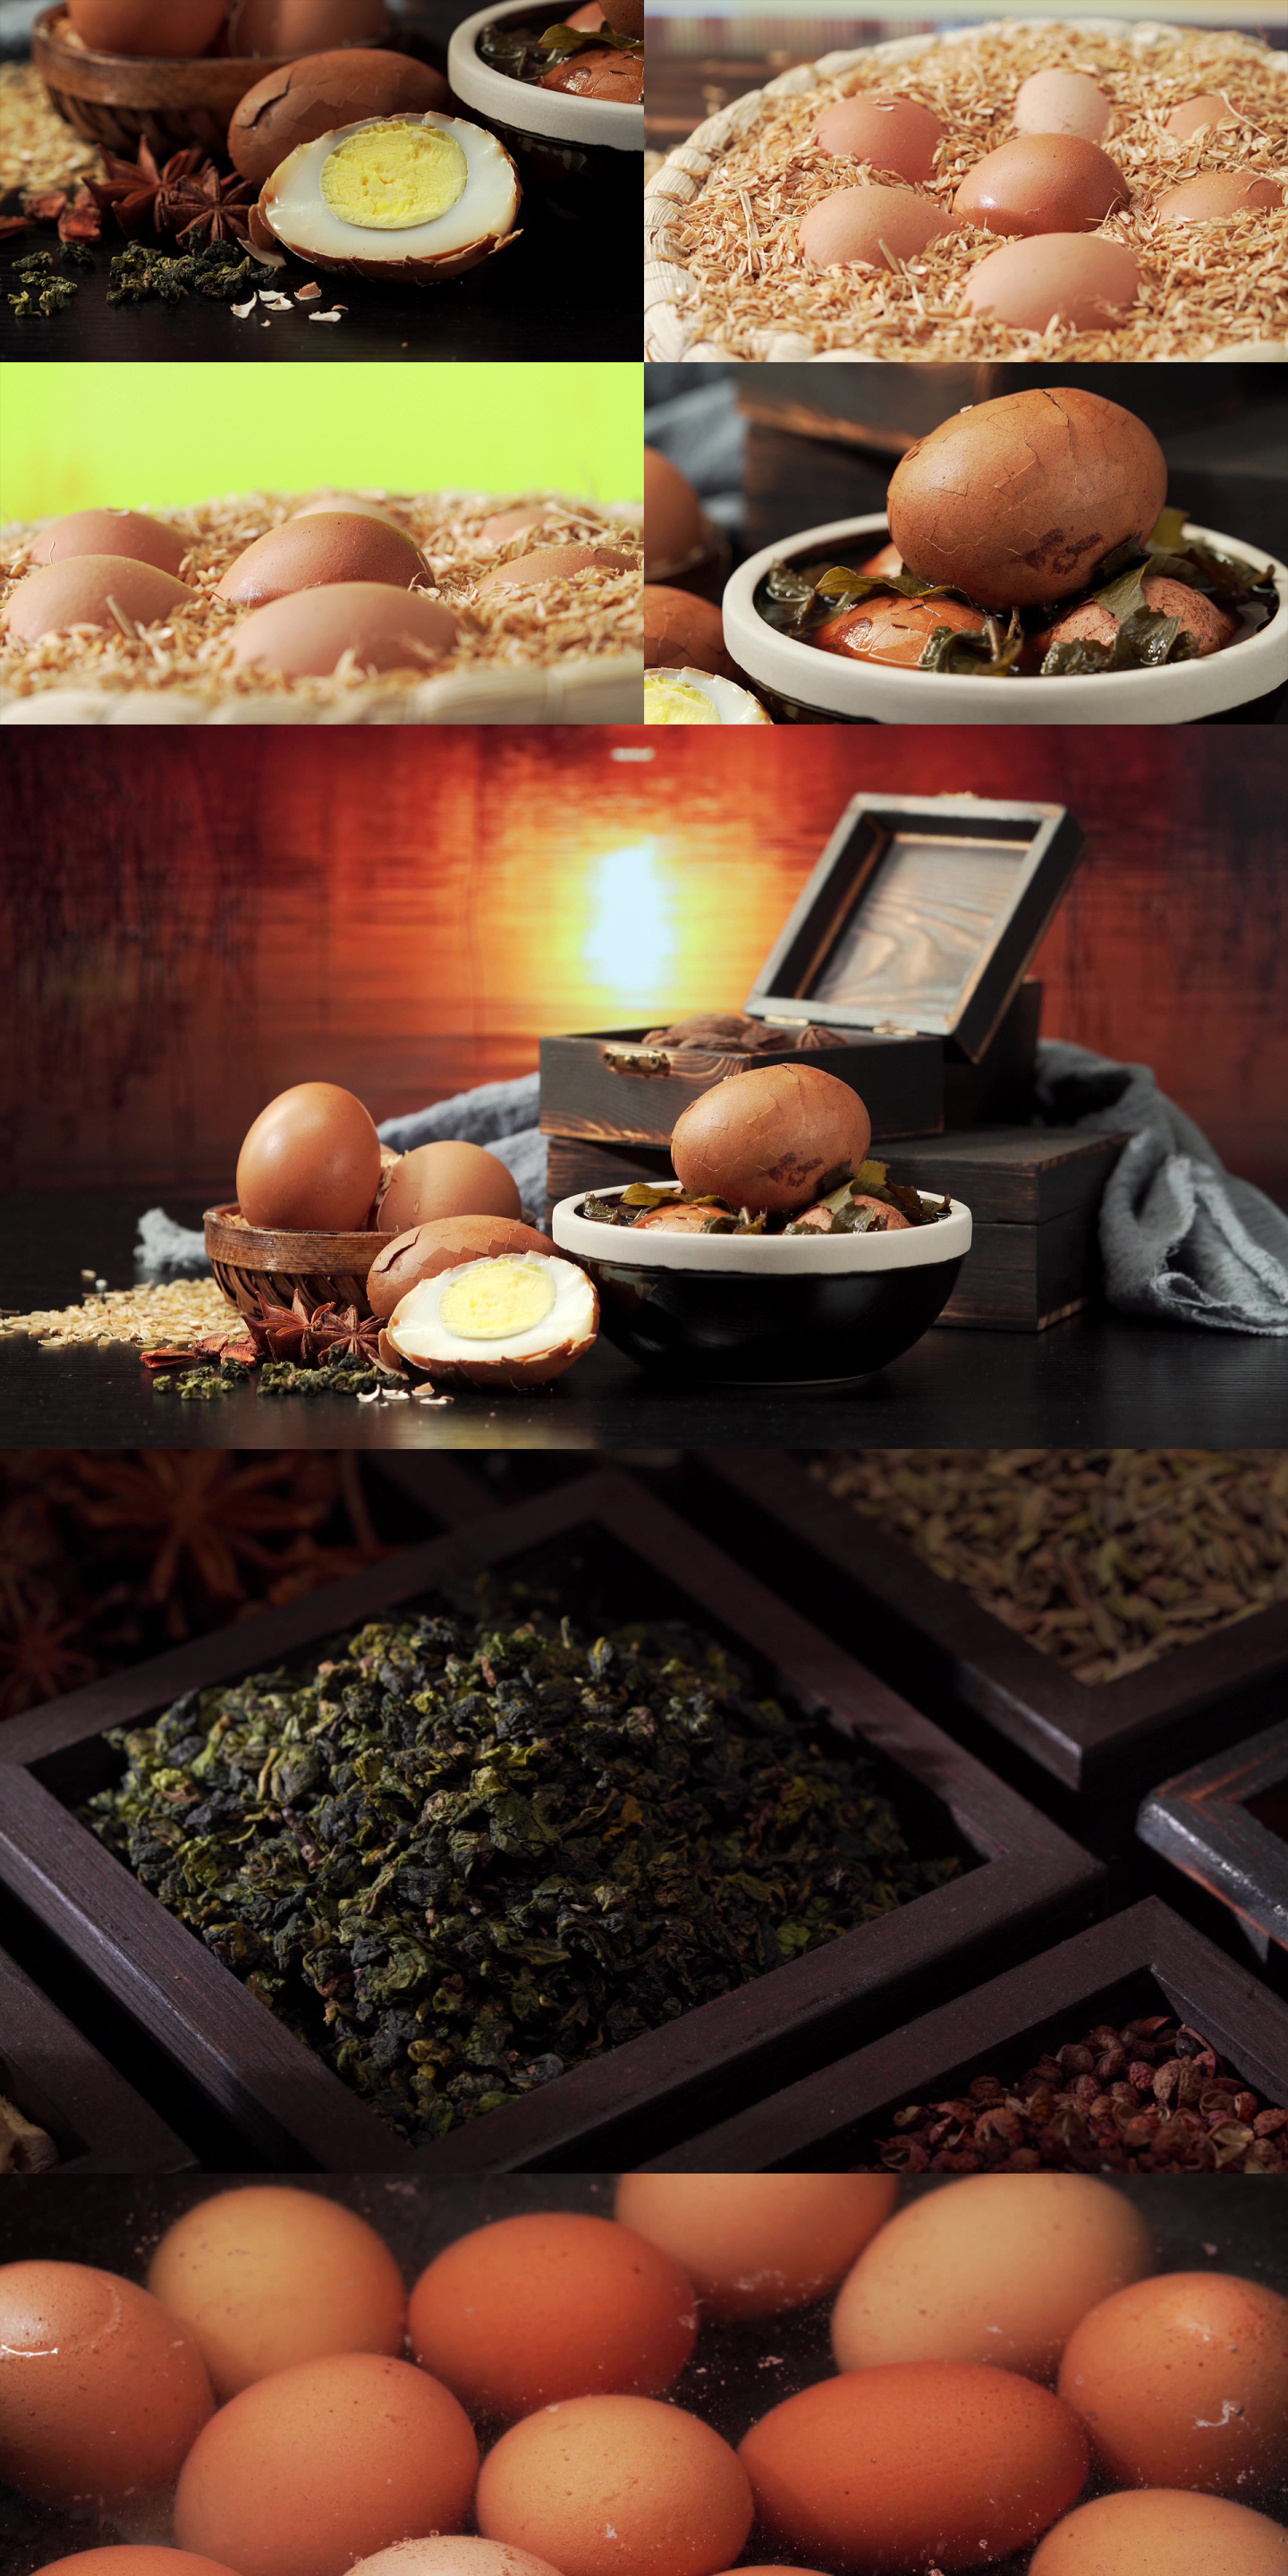 中国传统特色小吃茶叶蛋制作过程及配料展示